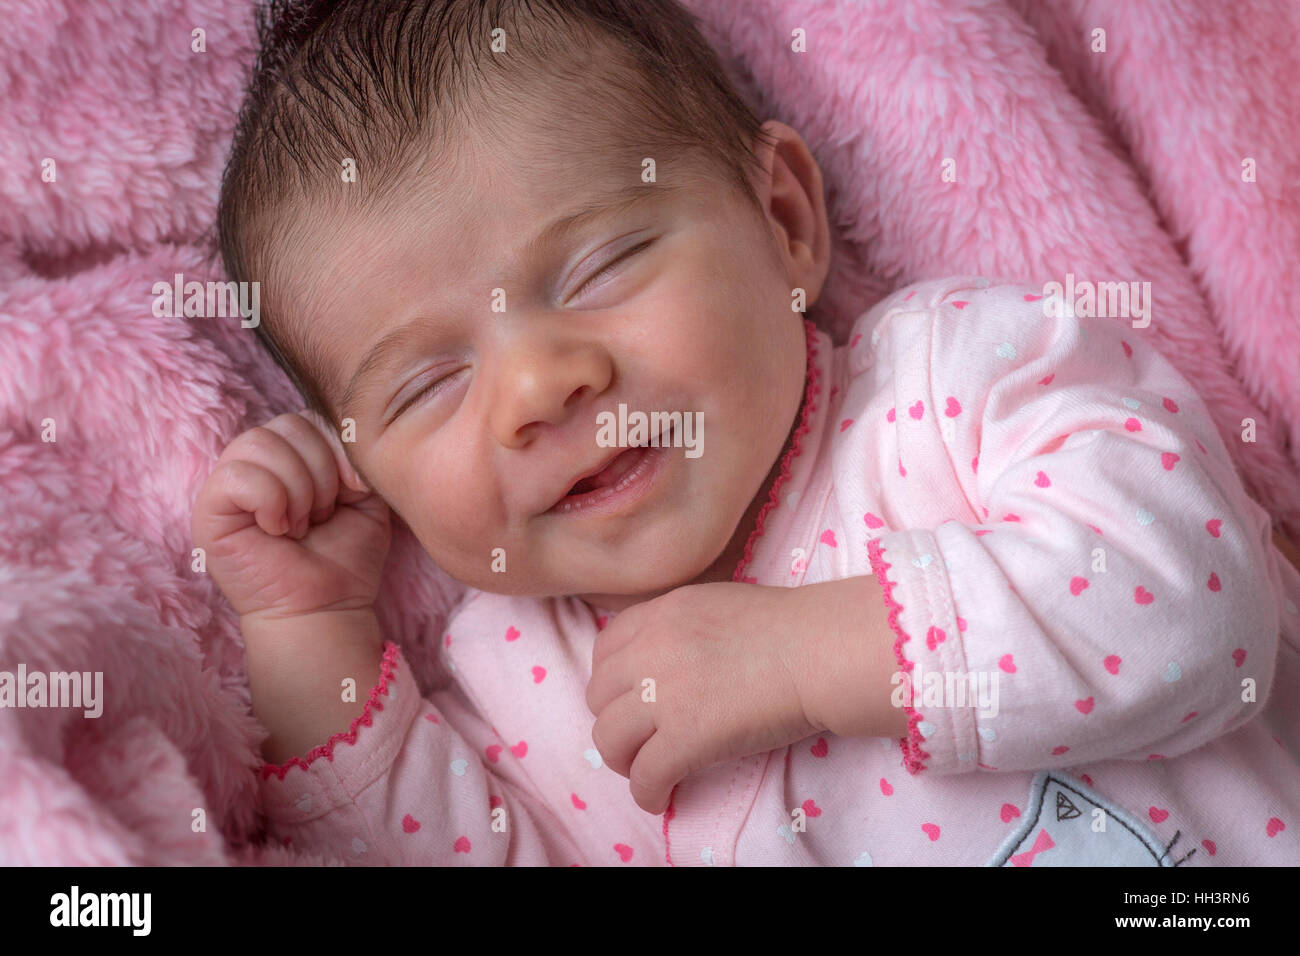 A moins de trois semaines d'âge smiling baby girl, couchée sur une couverture rose. Nouveau-né de moins de trois semaines souriant. Banque D'Images